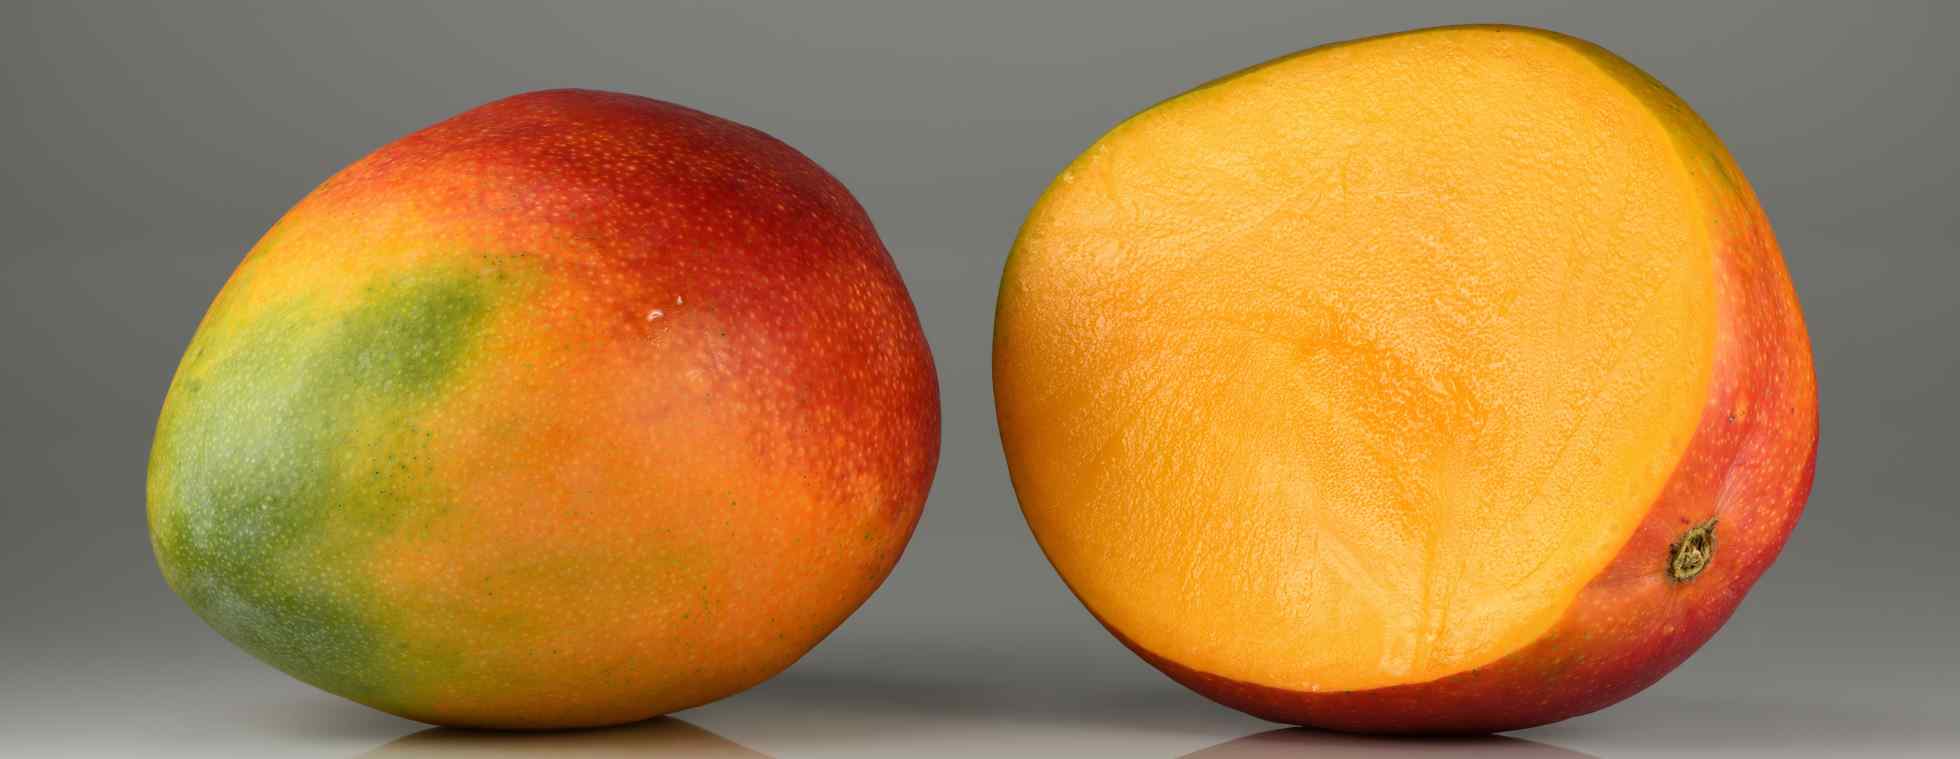 Quali sono le controindicazioni del mango?